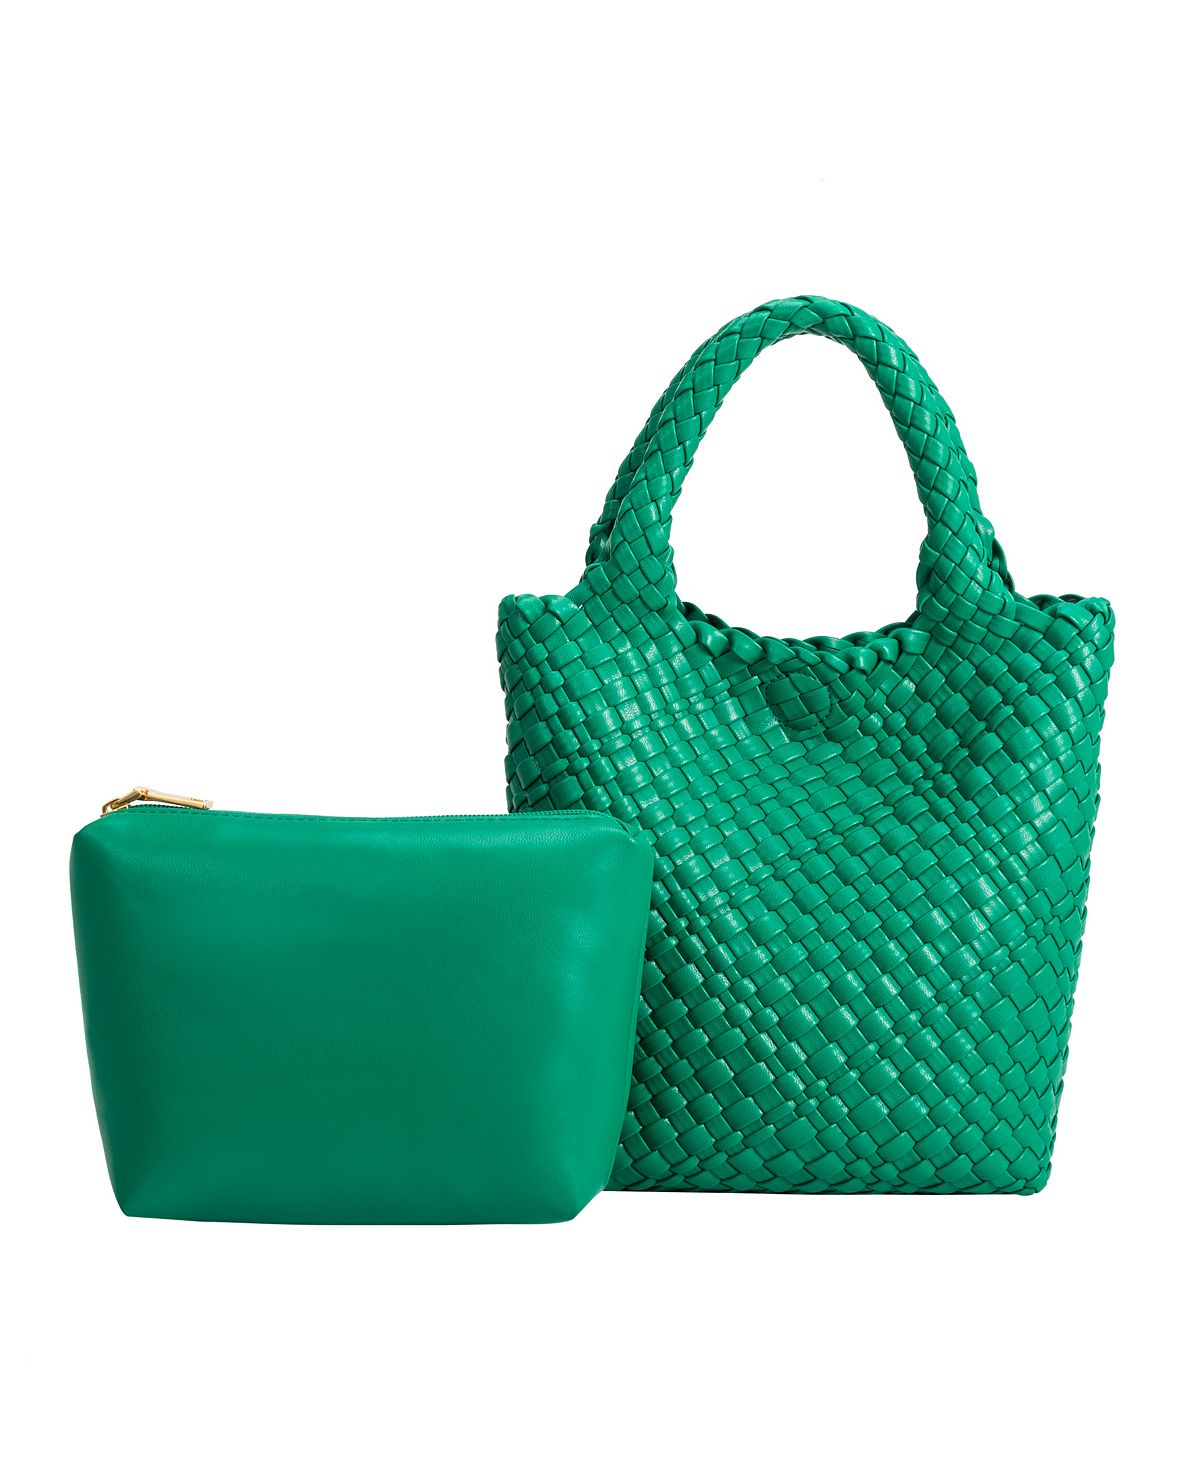 Женская большая сумка Eloise Melie Bianco, зеленый сумка женская florence collection m353 bianco ут 00011241